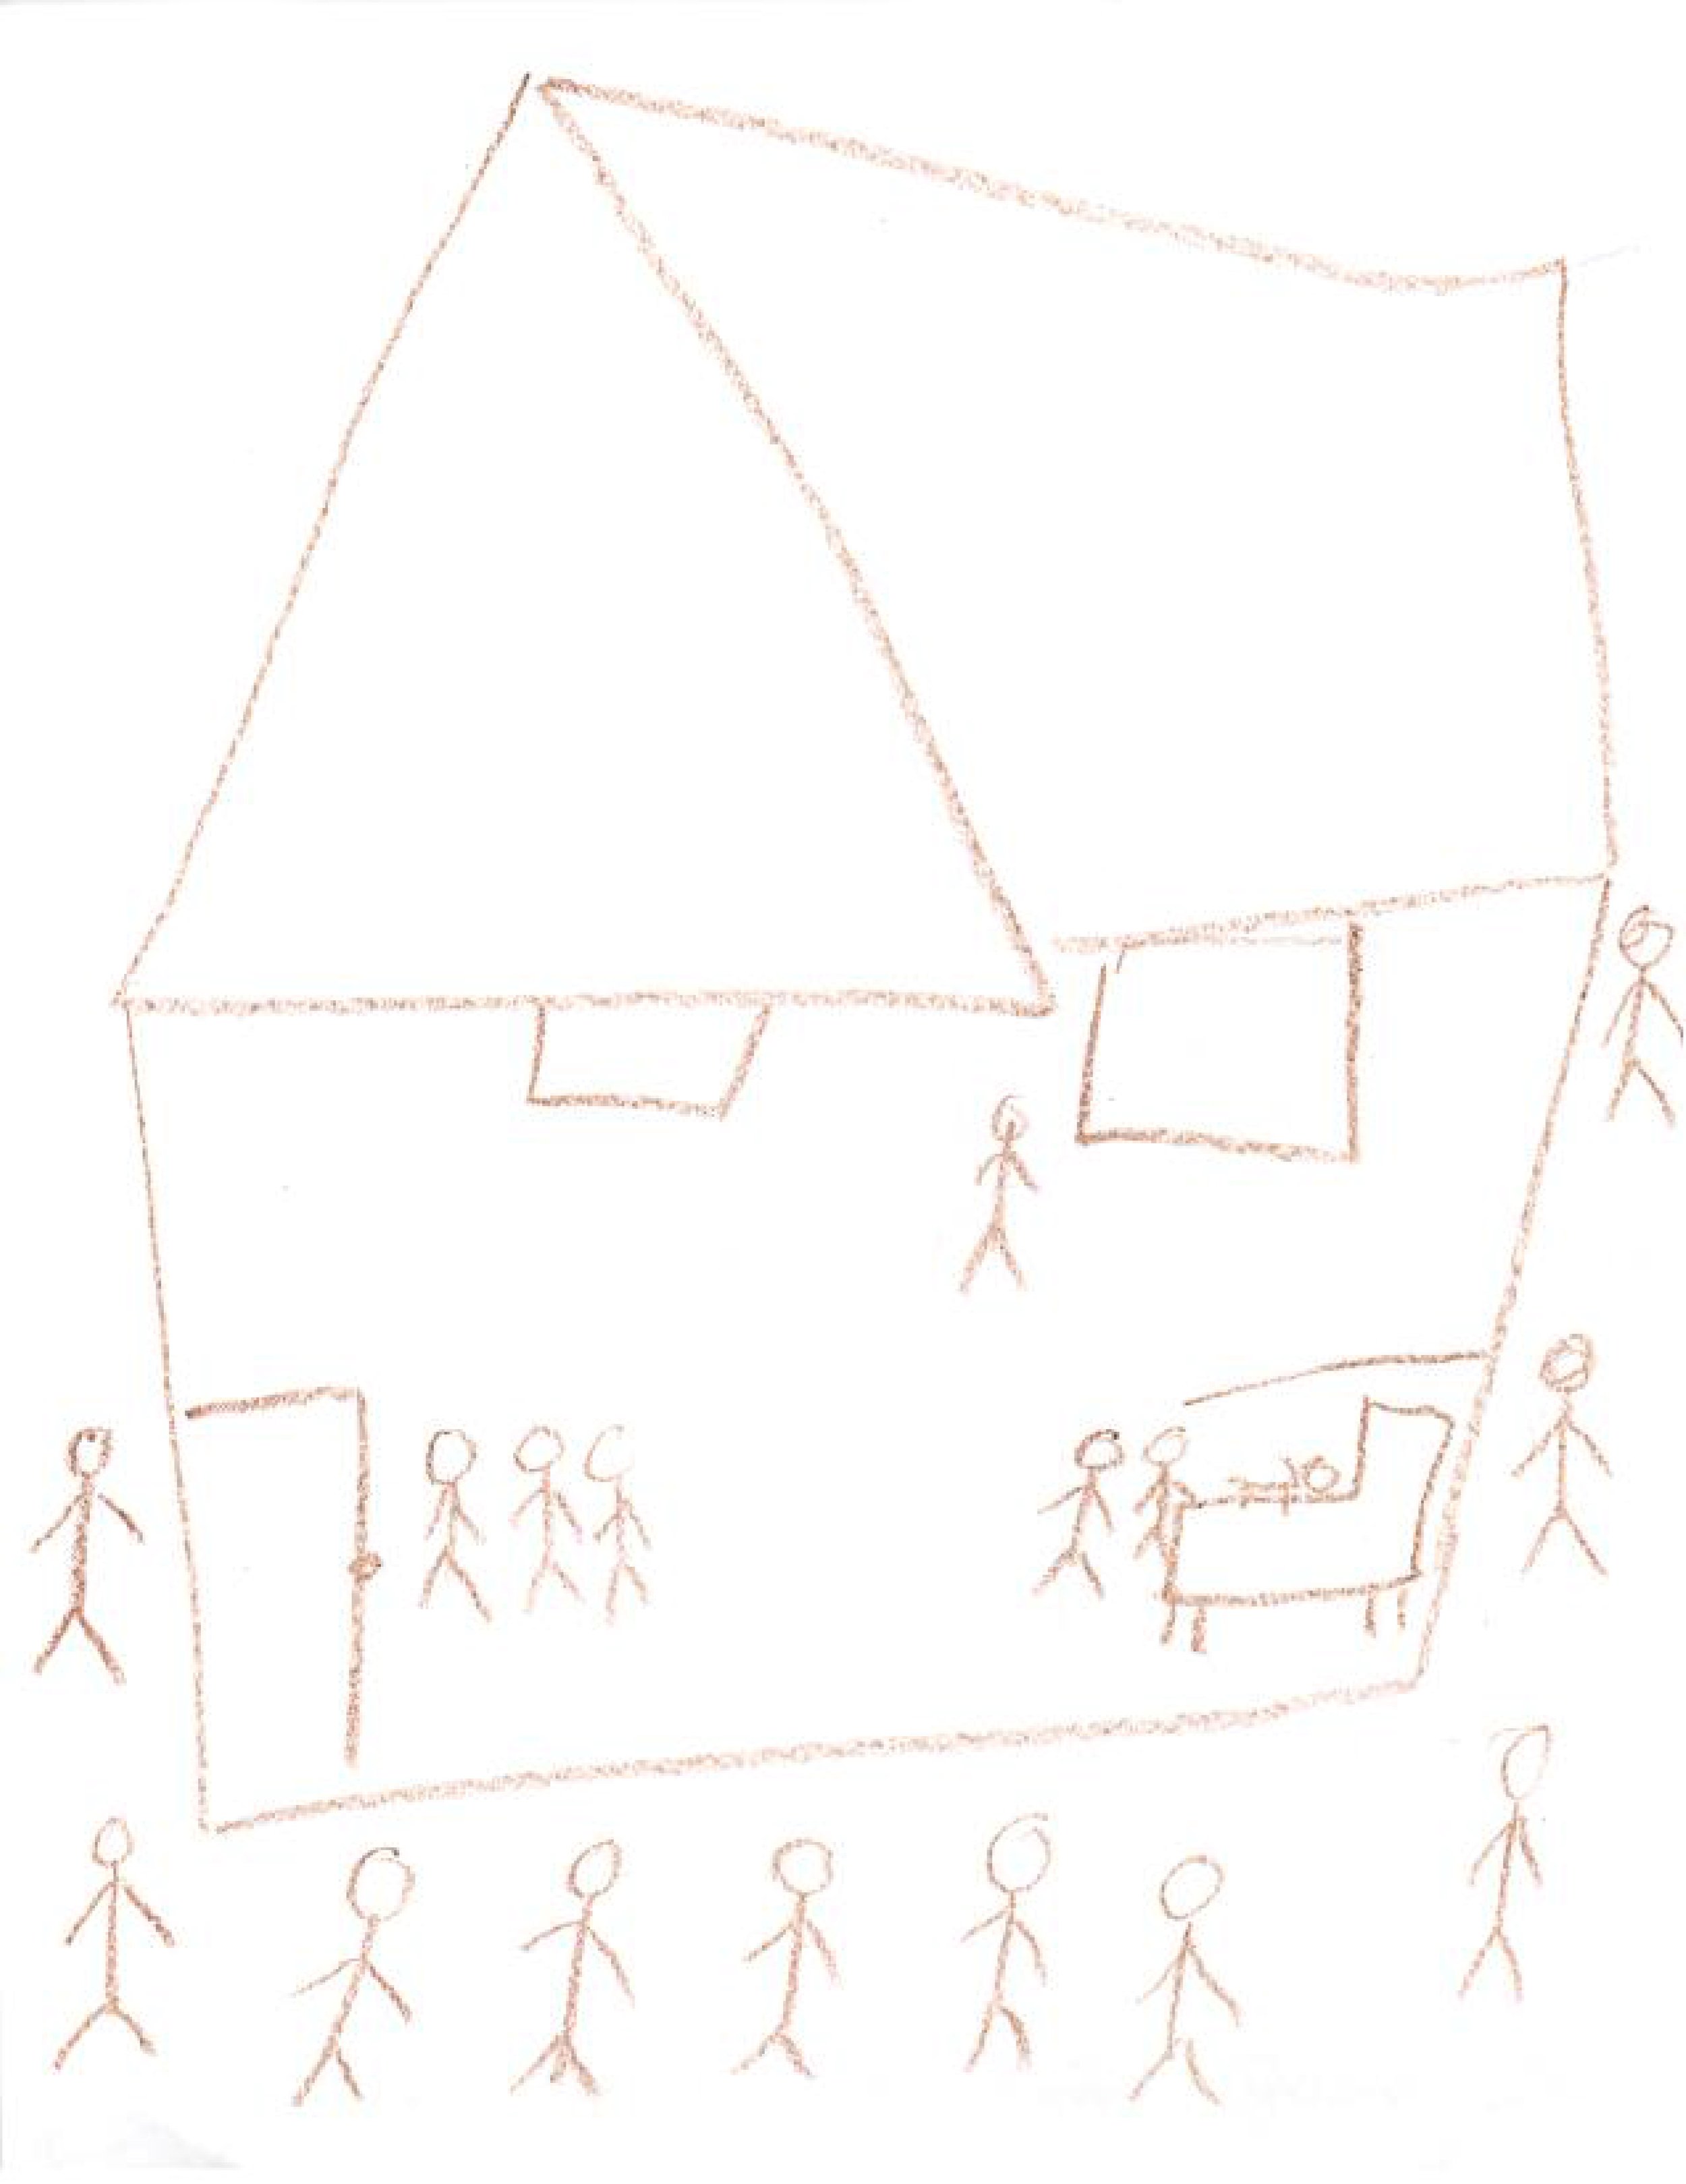 5_Kids_ Drawings of the Raids-13.jpg